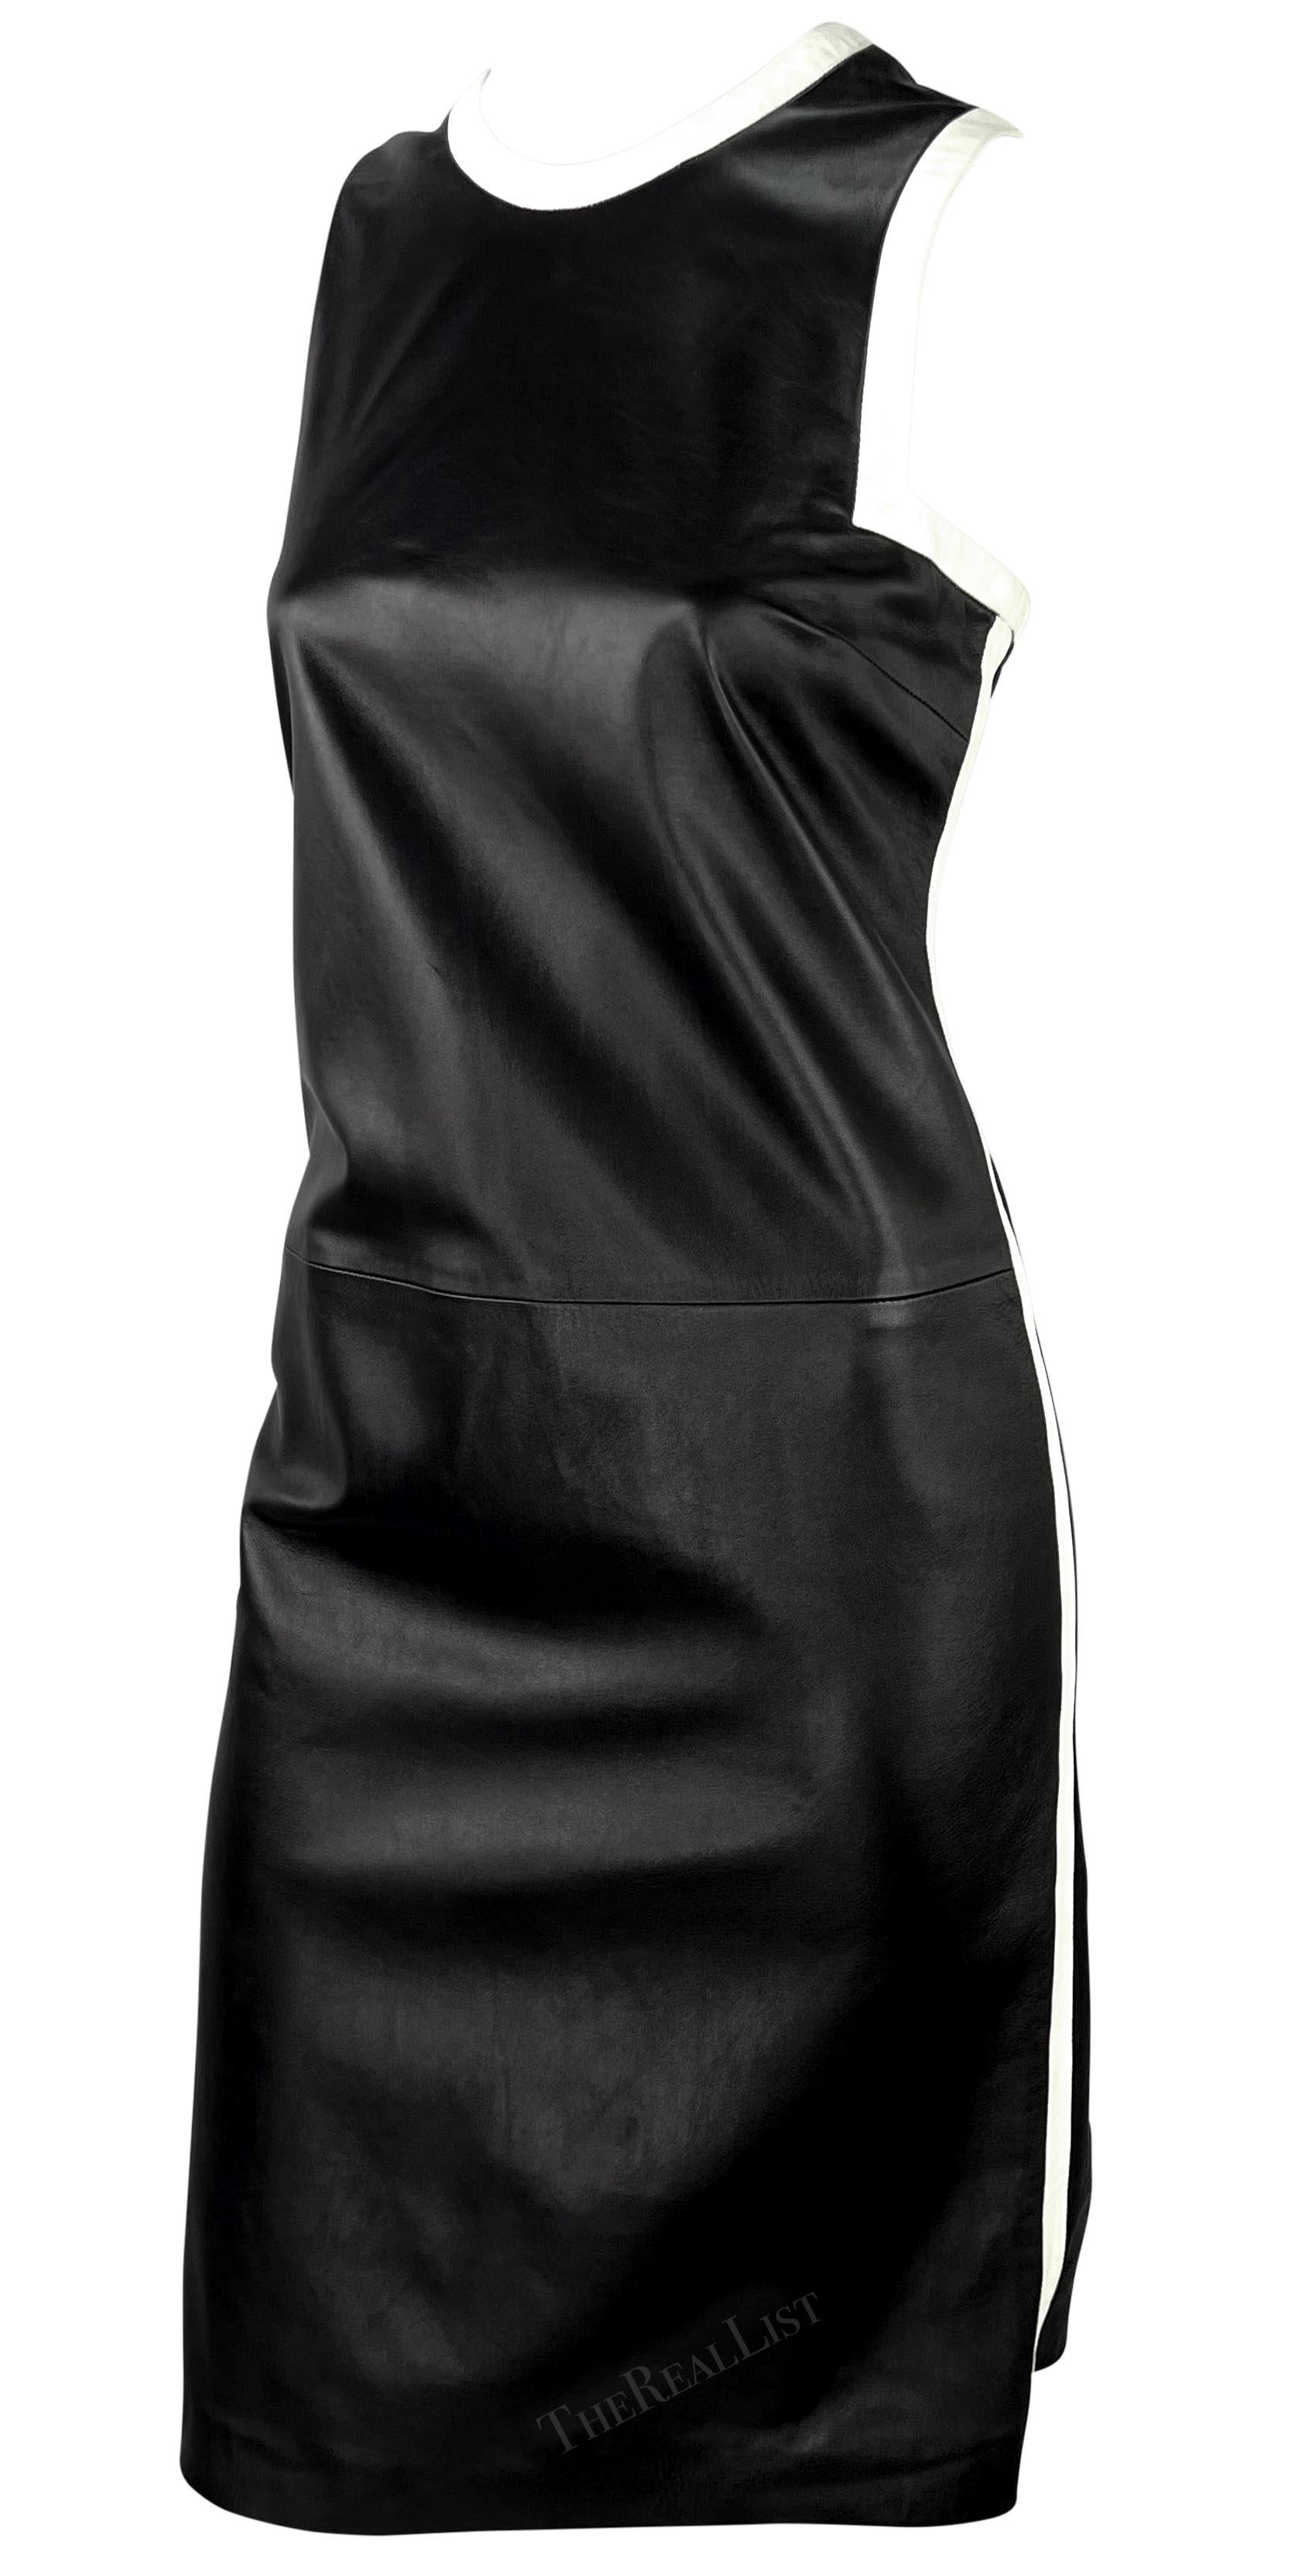 Women's S/S 2001 Ralph Lauren Black Runway Black Leather White Trim Sleeveless Dress For Sale